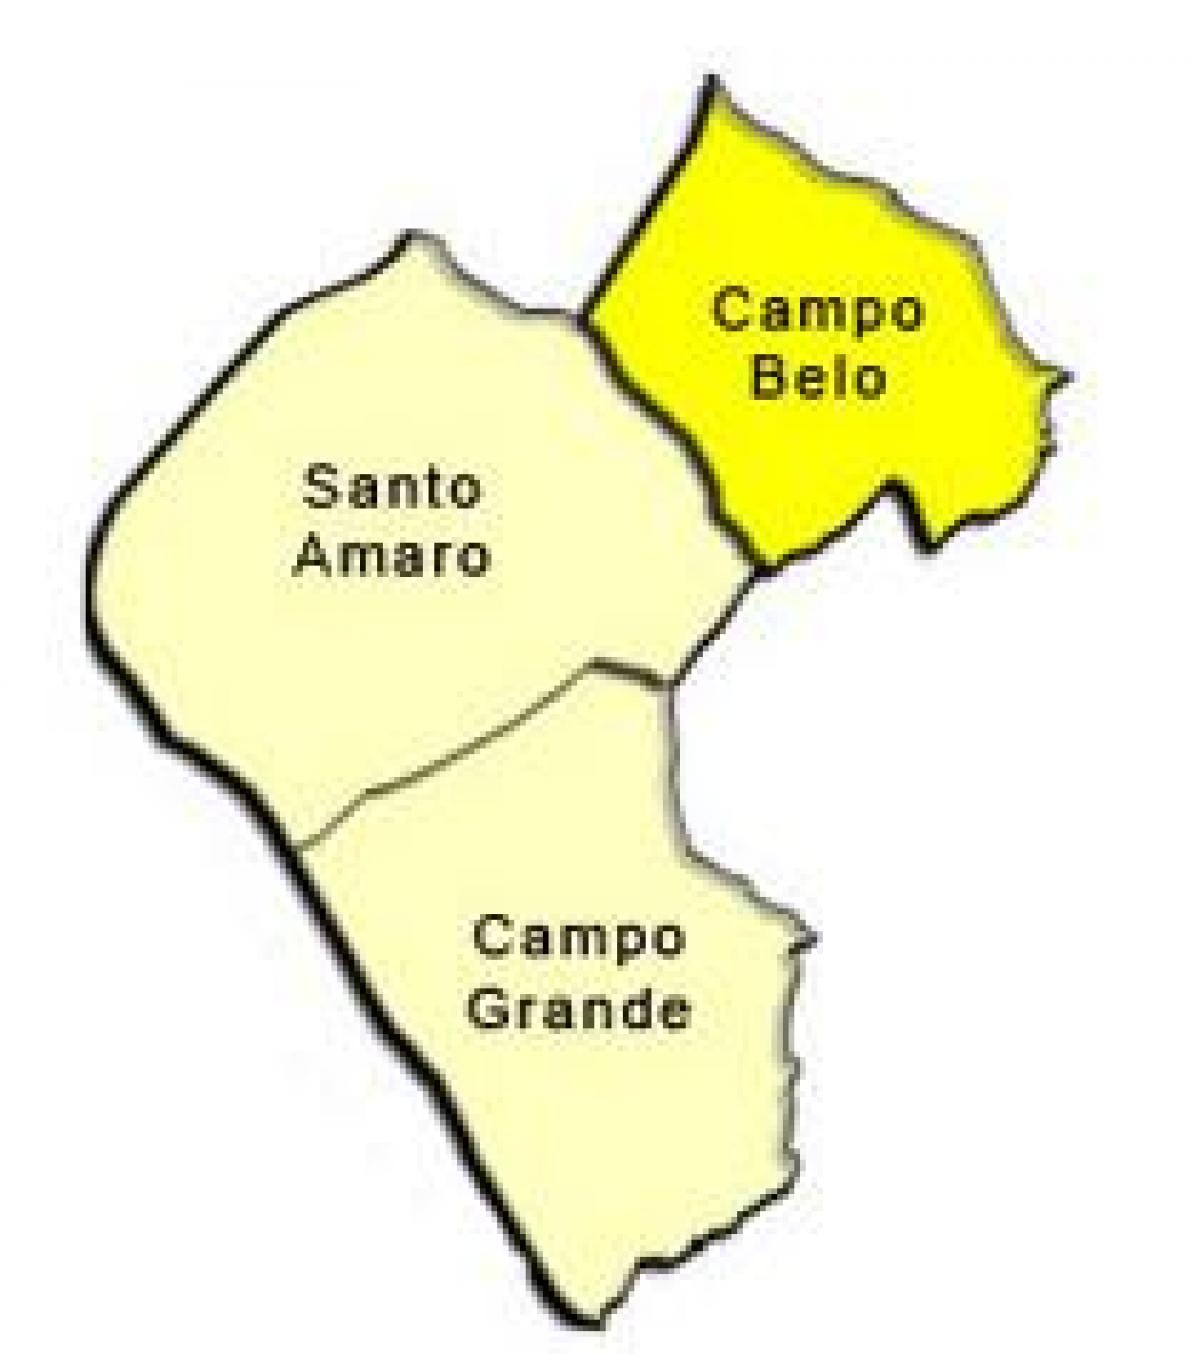 Bản đồ của Santo Tất phụ tỉnh